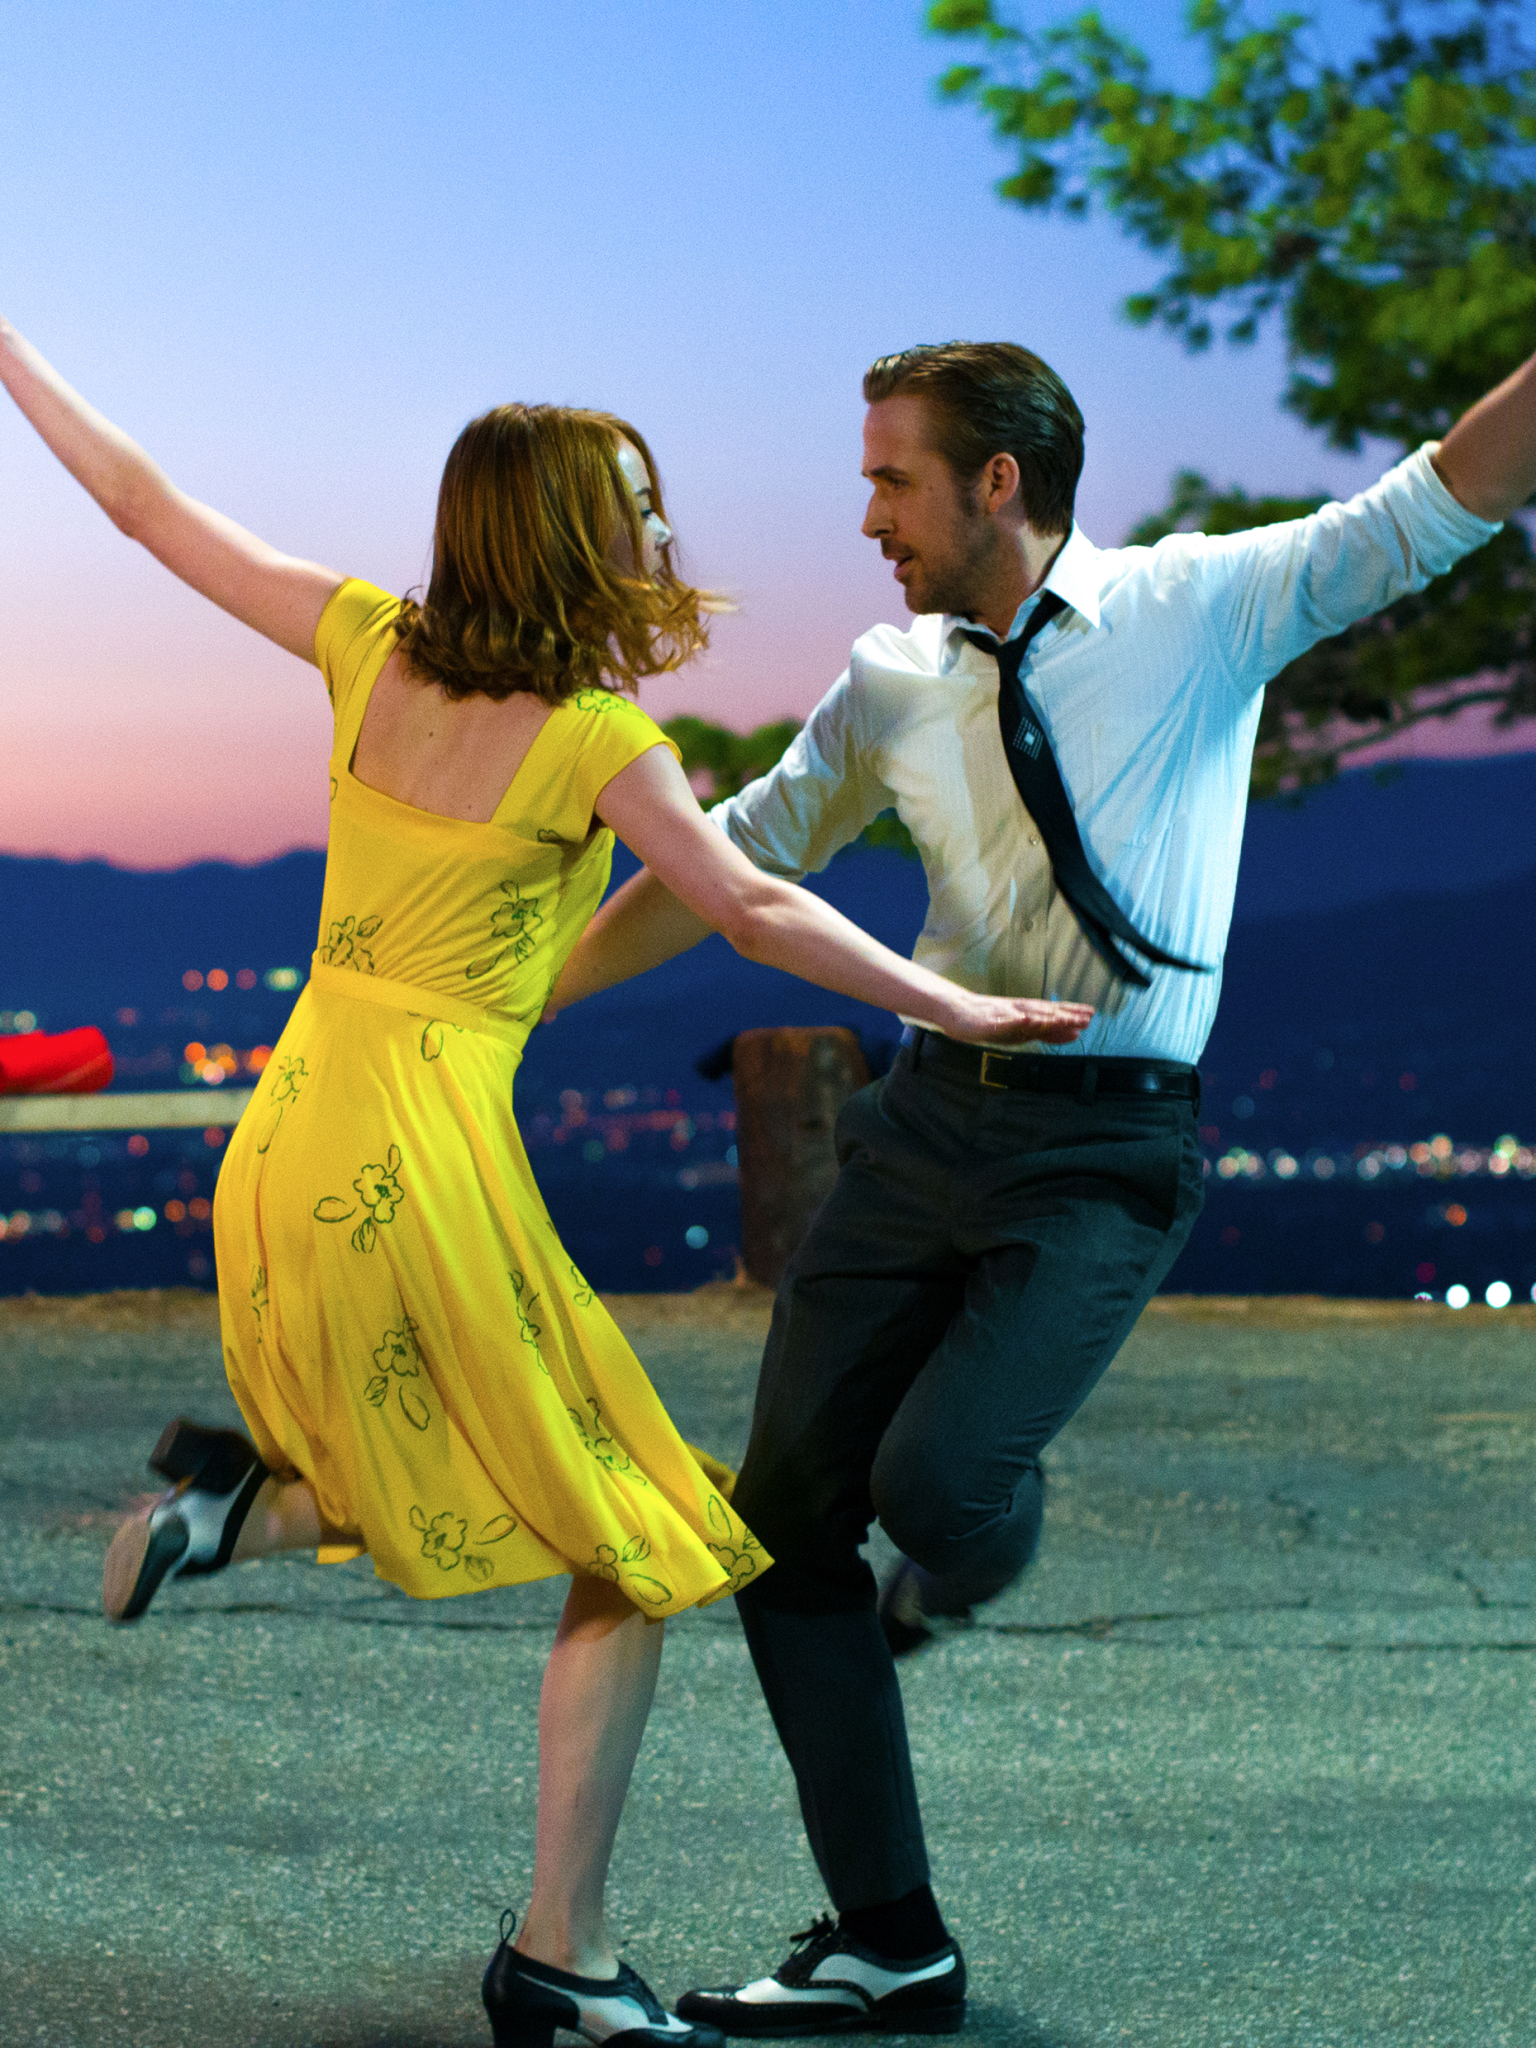 Descarga gratuita de fondo de pantalla para móvil de Ryan Gosling, Emma Stone, Películas, Bailando, La Ciudad De Las Estrellas (La La Land).